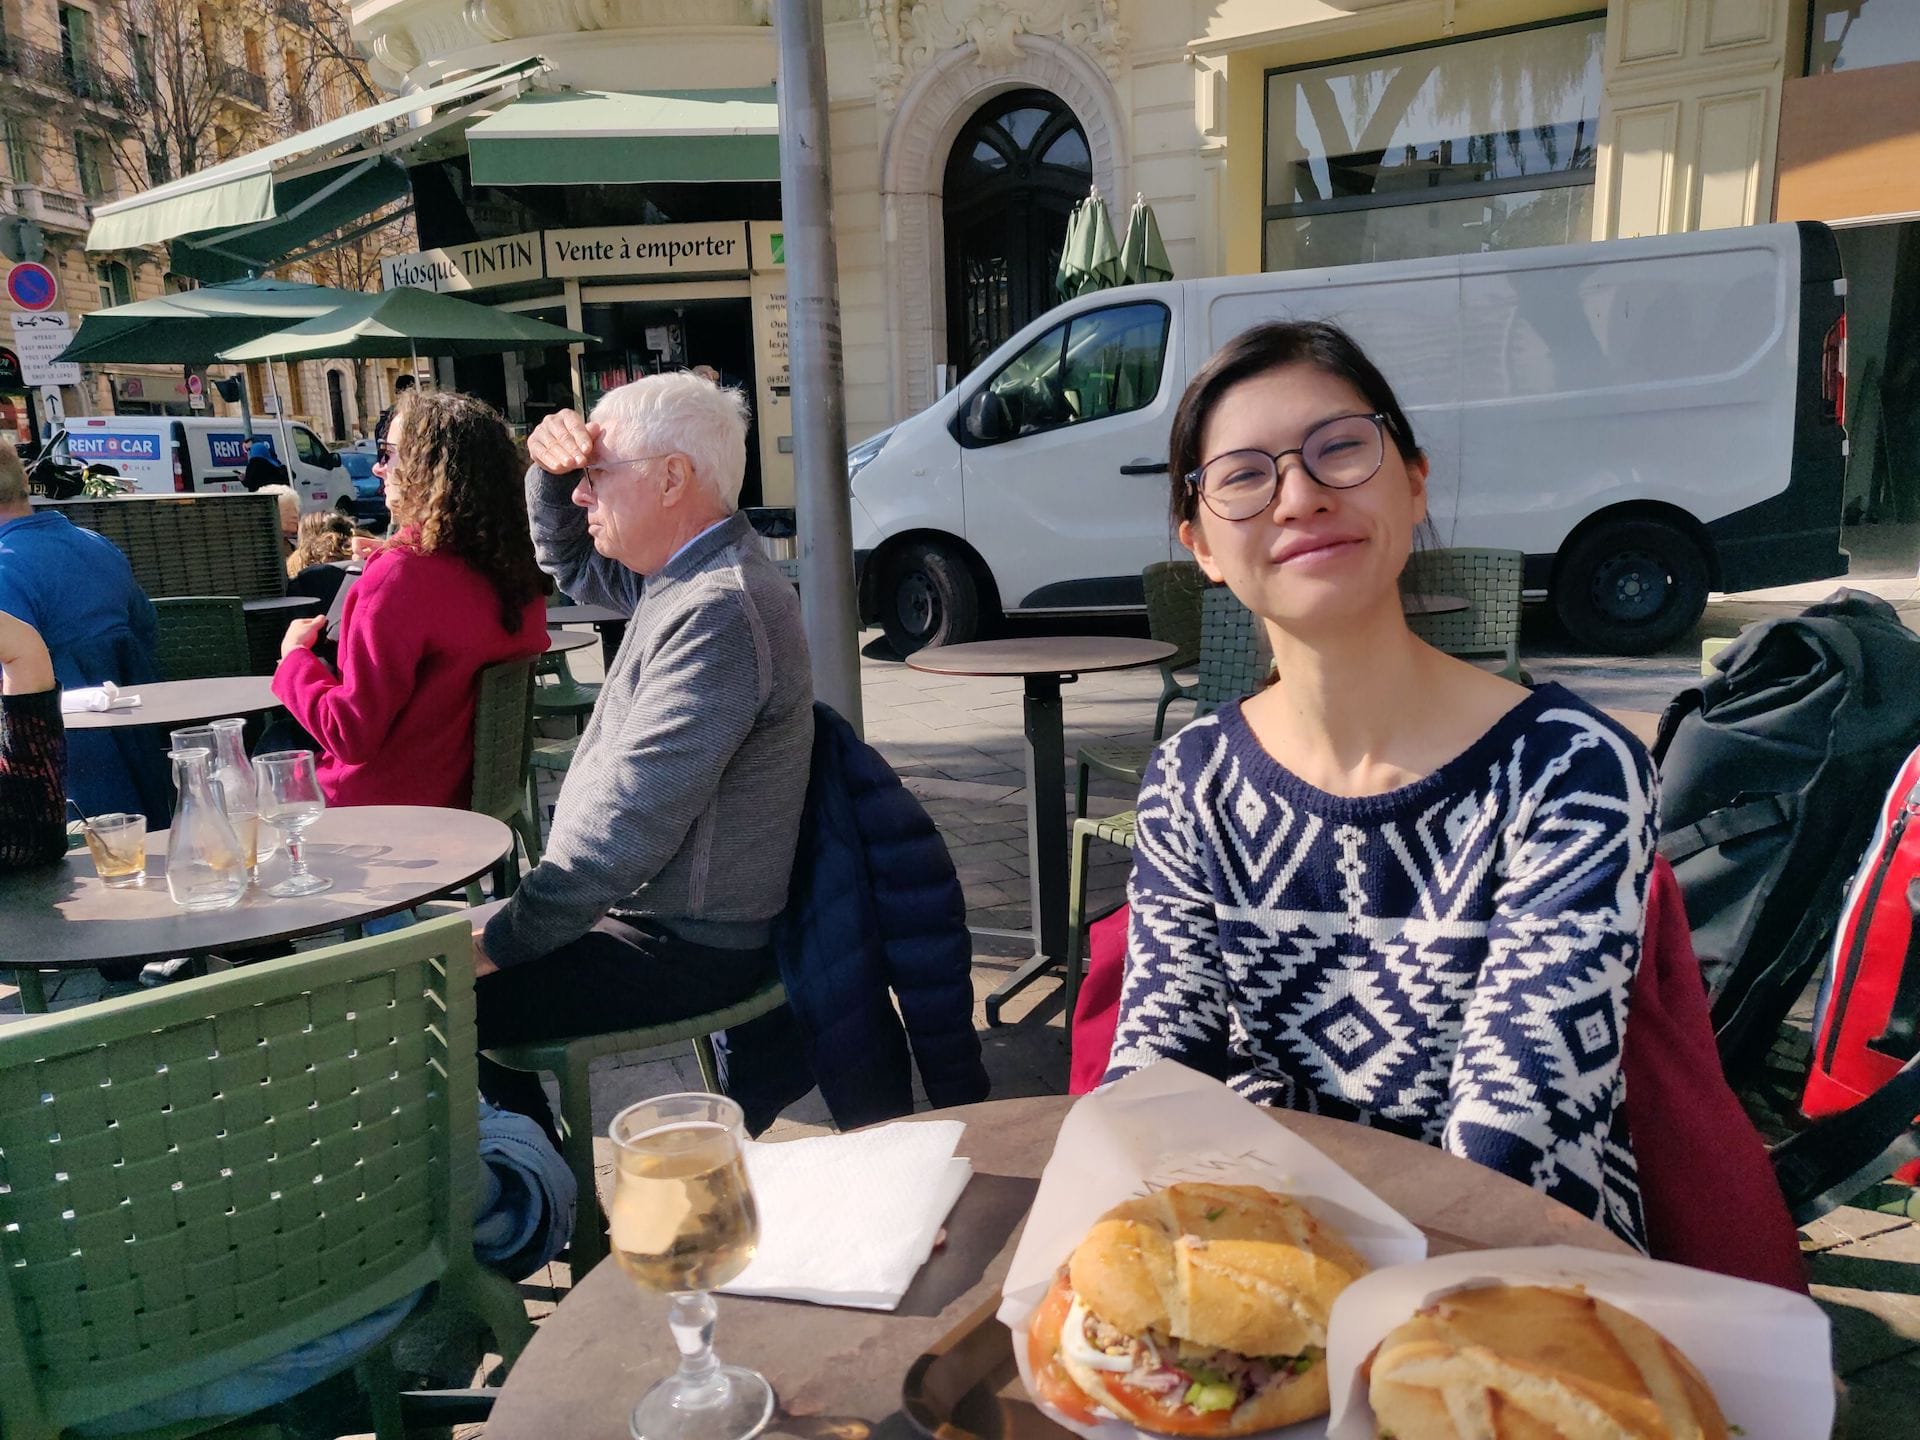 Clara à table sur la terrasse du Kiosque Tintin, qu'on aperçoit à l'arrière de la photo. Sur la table, deux pan bagnat et un verre de rosé.